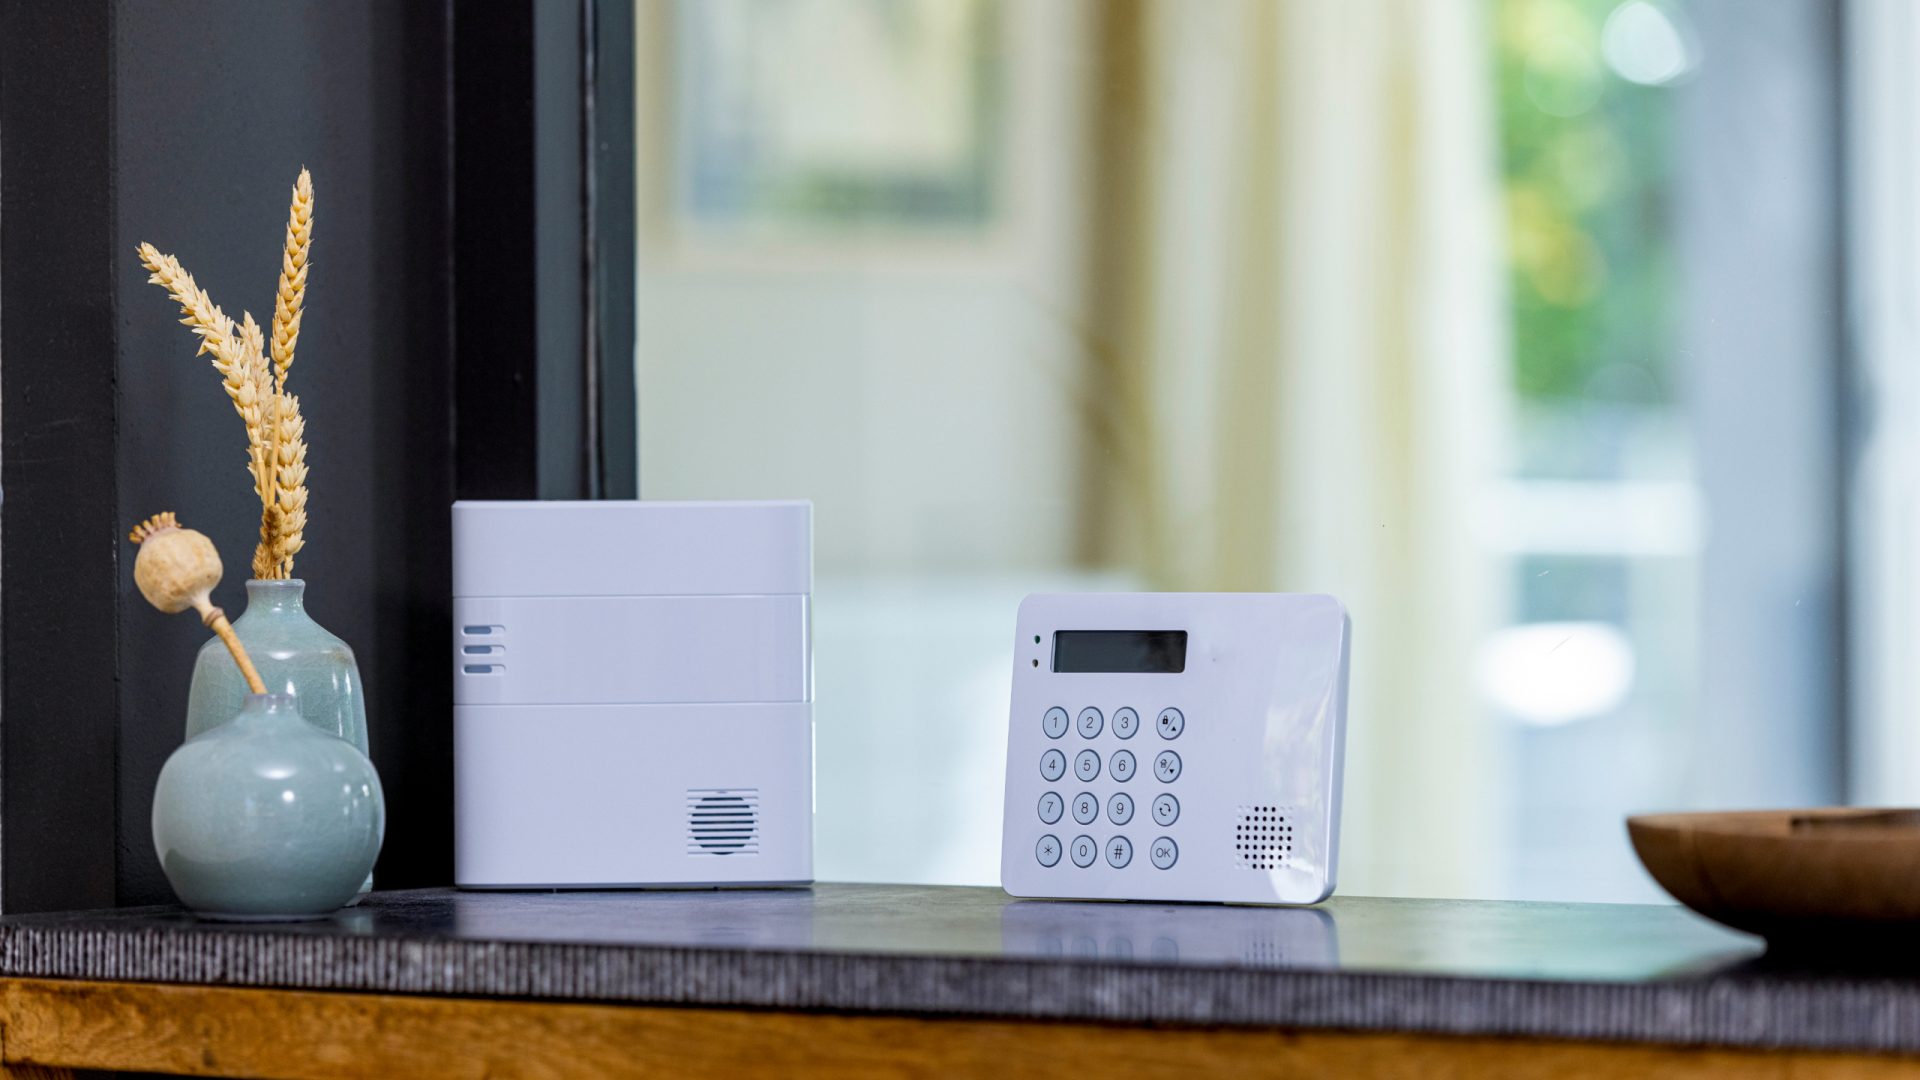 Assurer la sécurité de votre maison : gardiennage et systèmes d'alarme